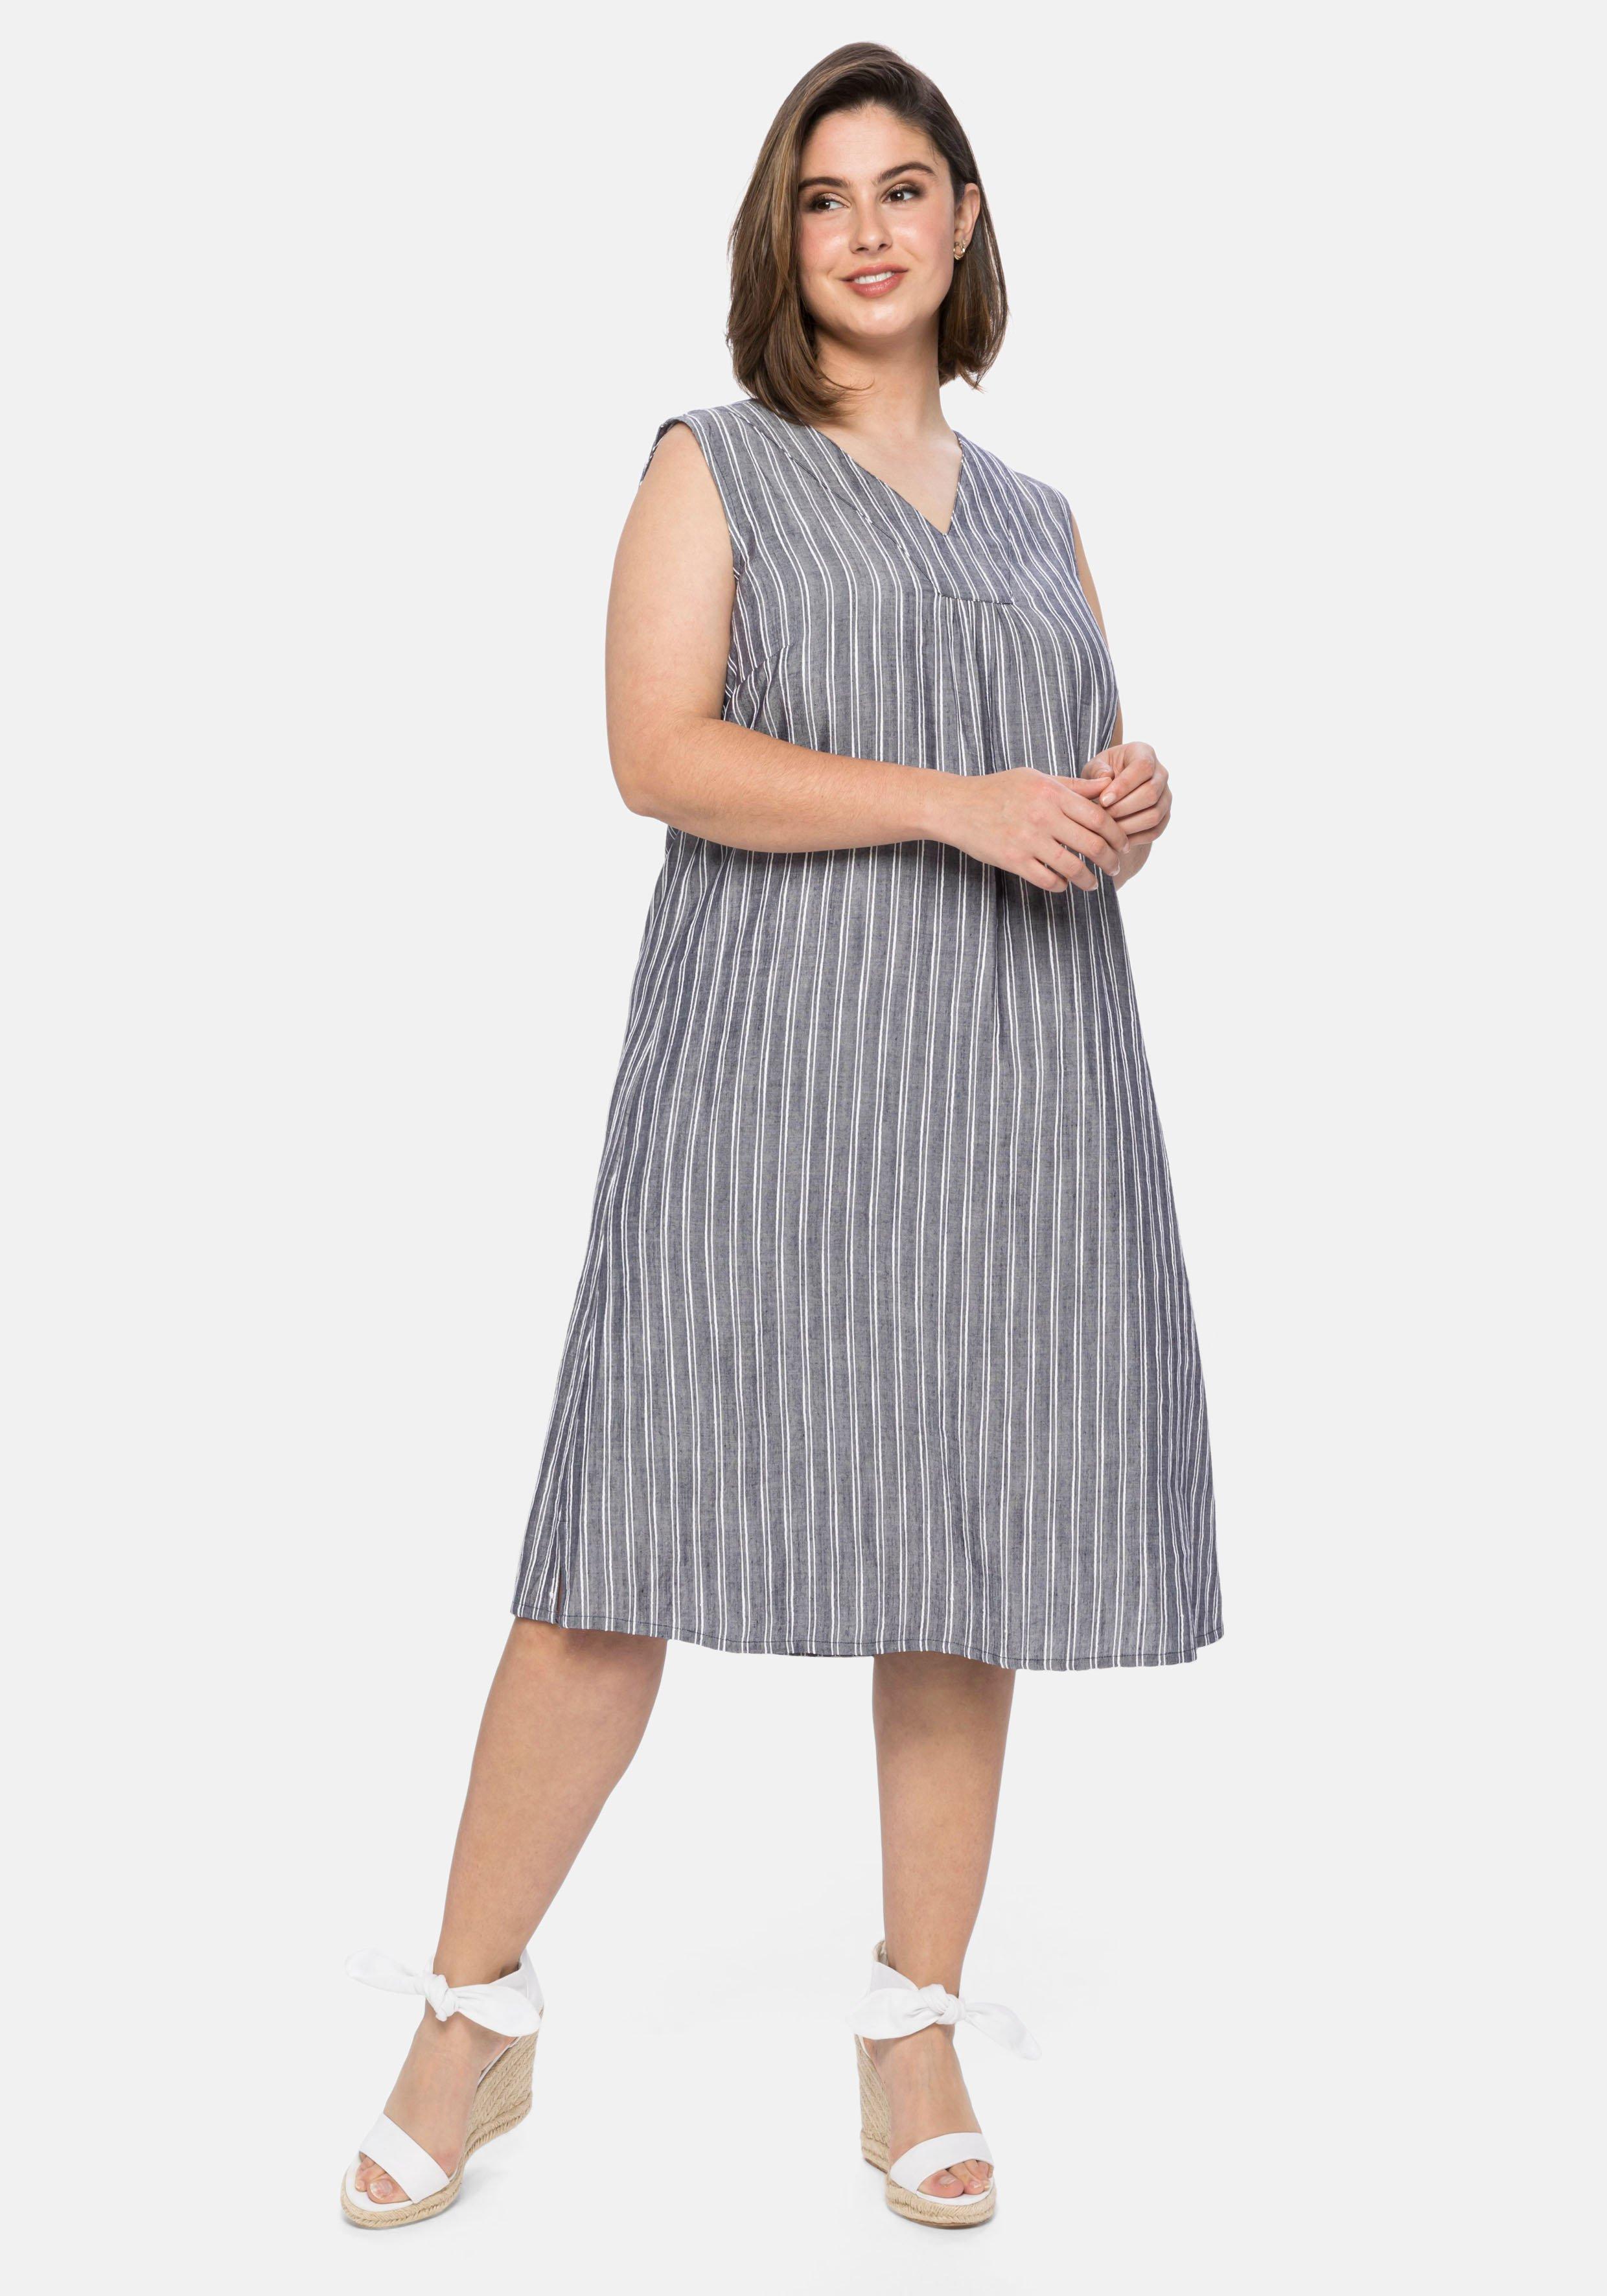 Ärmelloses Kleid mit strukturierten Streifen - marine | sheego